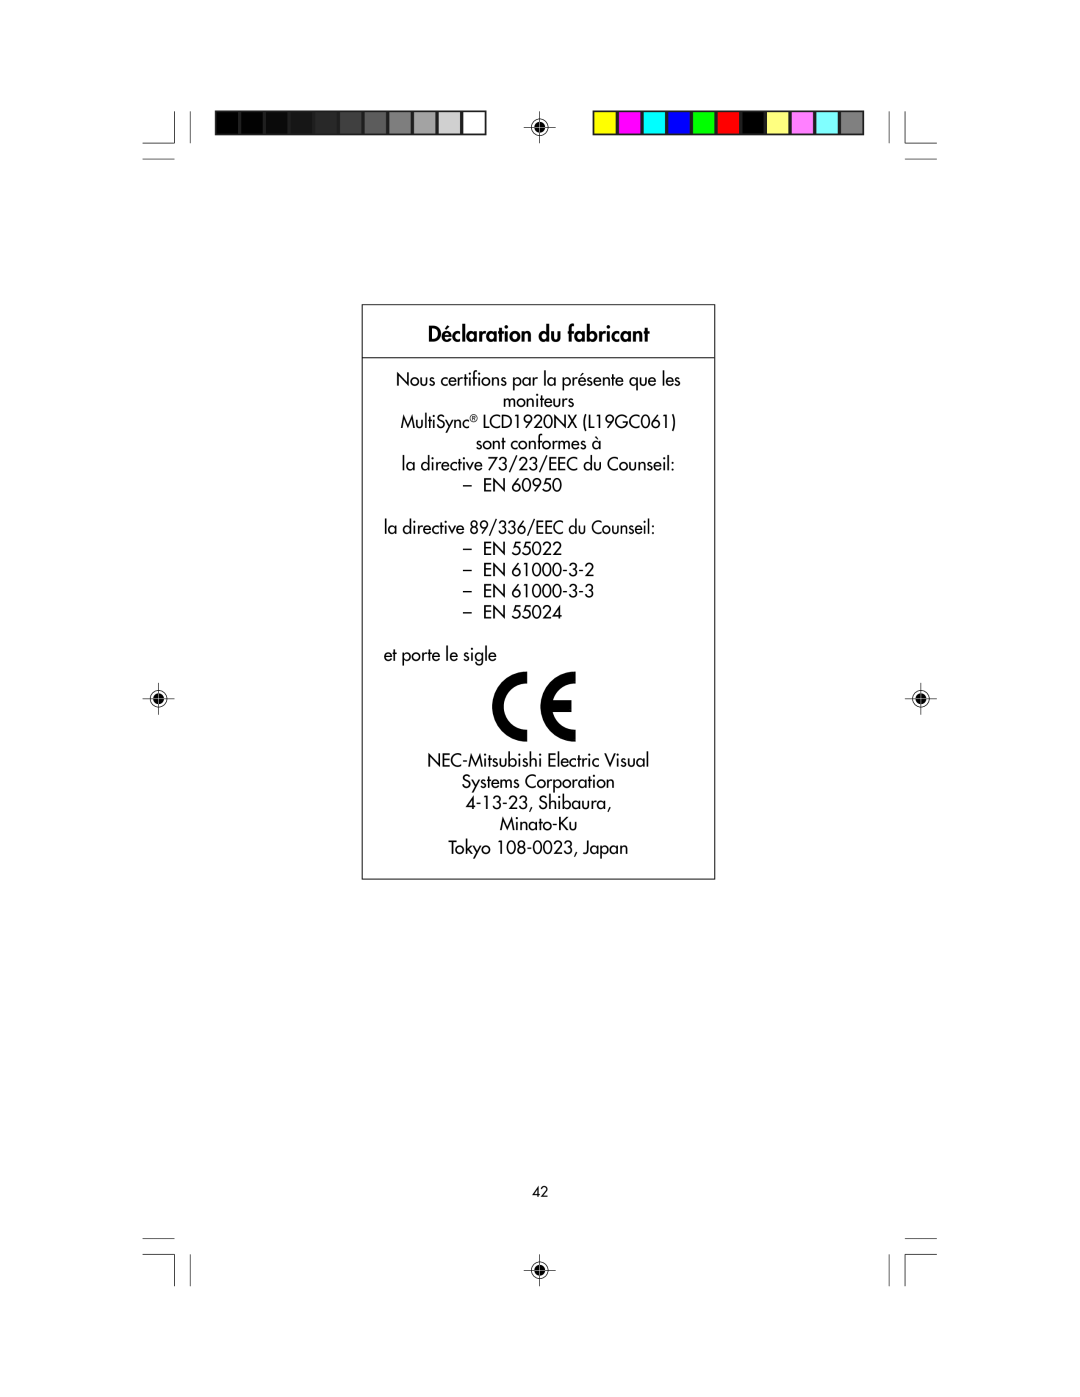 NEC LCD1920NX Déclaration du fabricant, Nous certifions par la présente que les moniteurs, Minato-Ku Tokyo 108-0023, Japan 